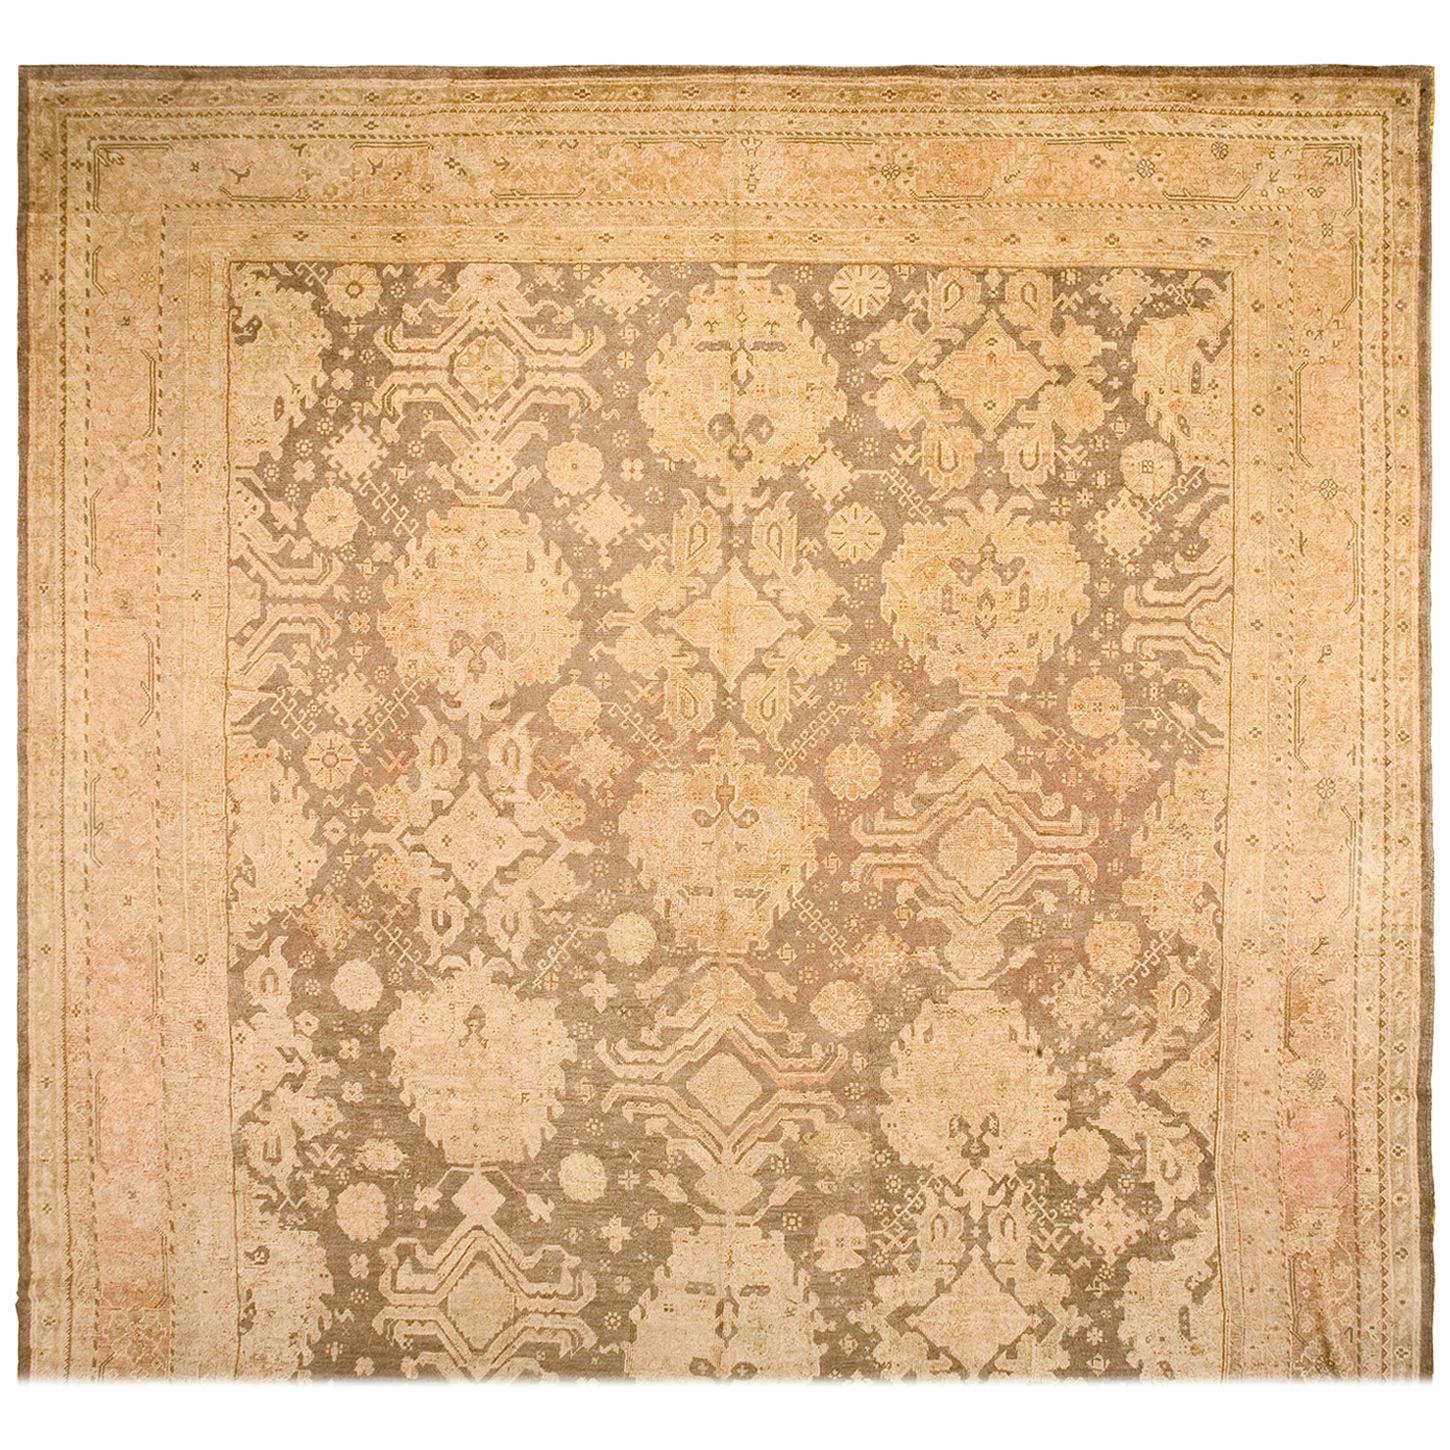 Türkischer Oushak-Teppich des frühen 20. Jahrhunderts ( 16' x 21'6" - 457 x 655")